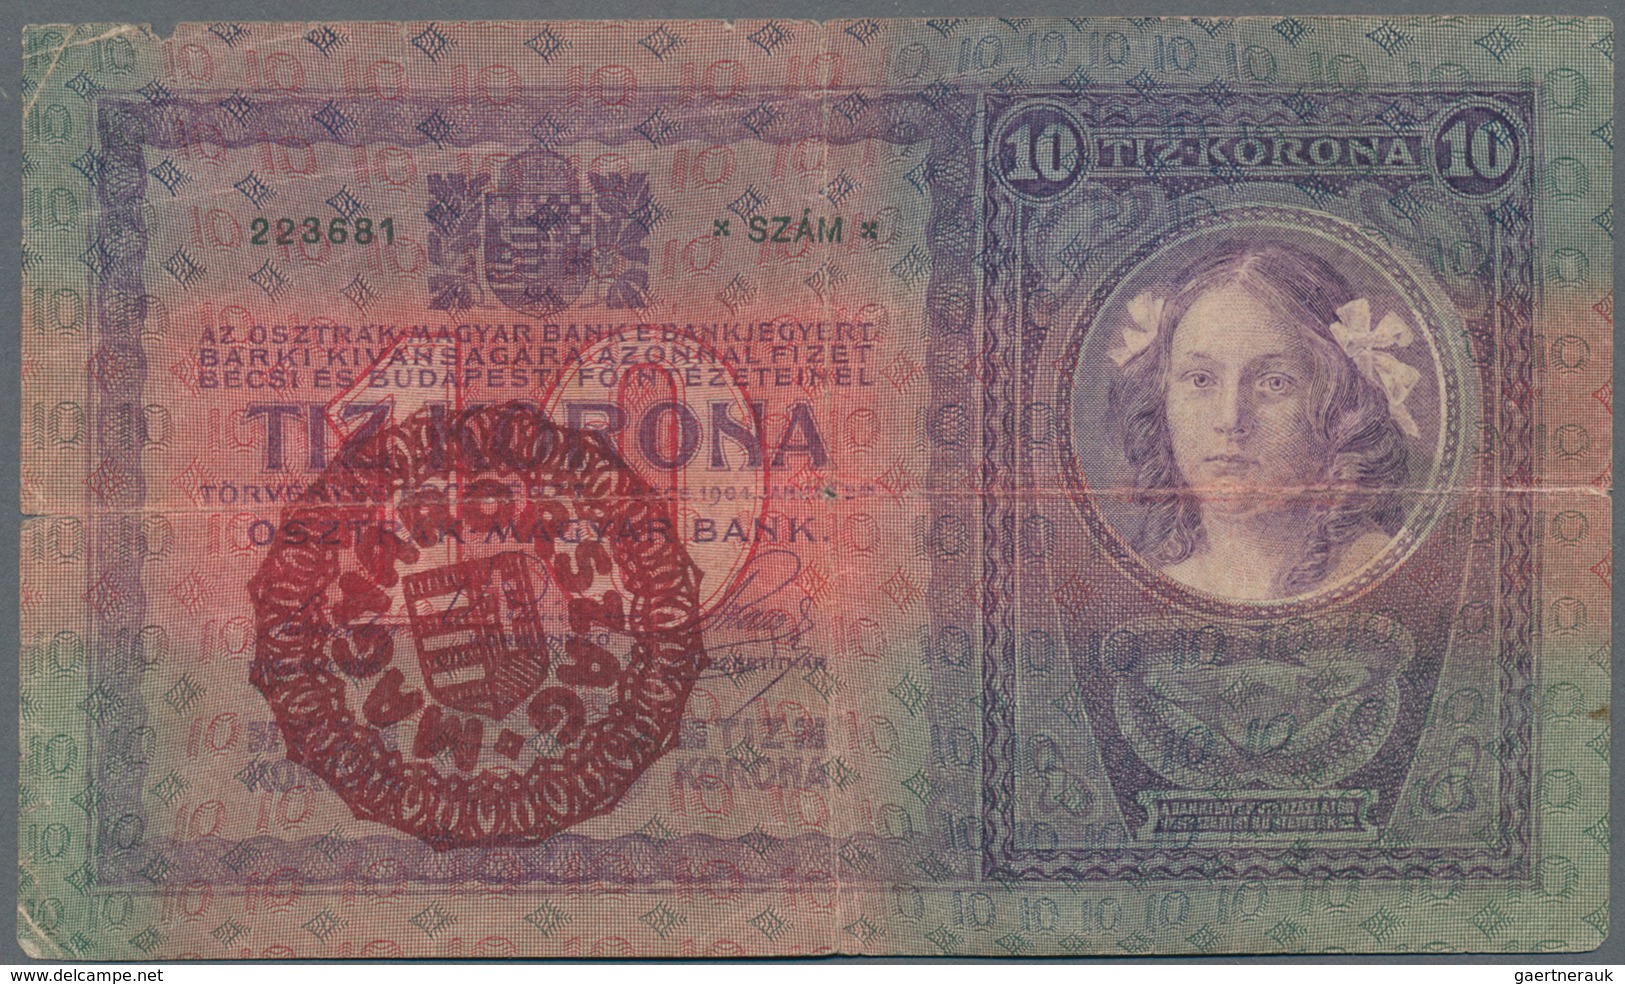 Hungary / Ungarn: Osztrák-Magyar Bank / Oesterreichisch-Ungarische Bank set with 13 banknotes of the